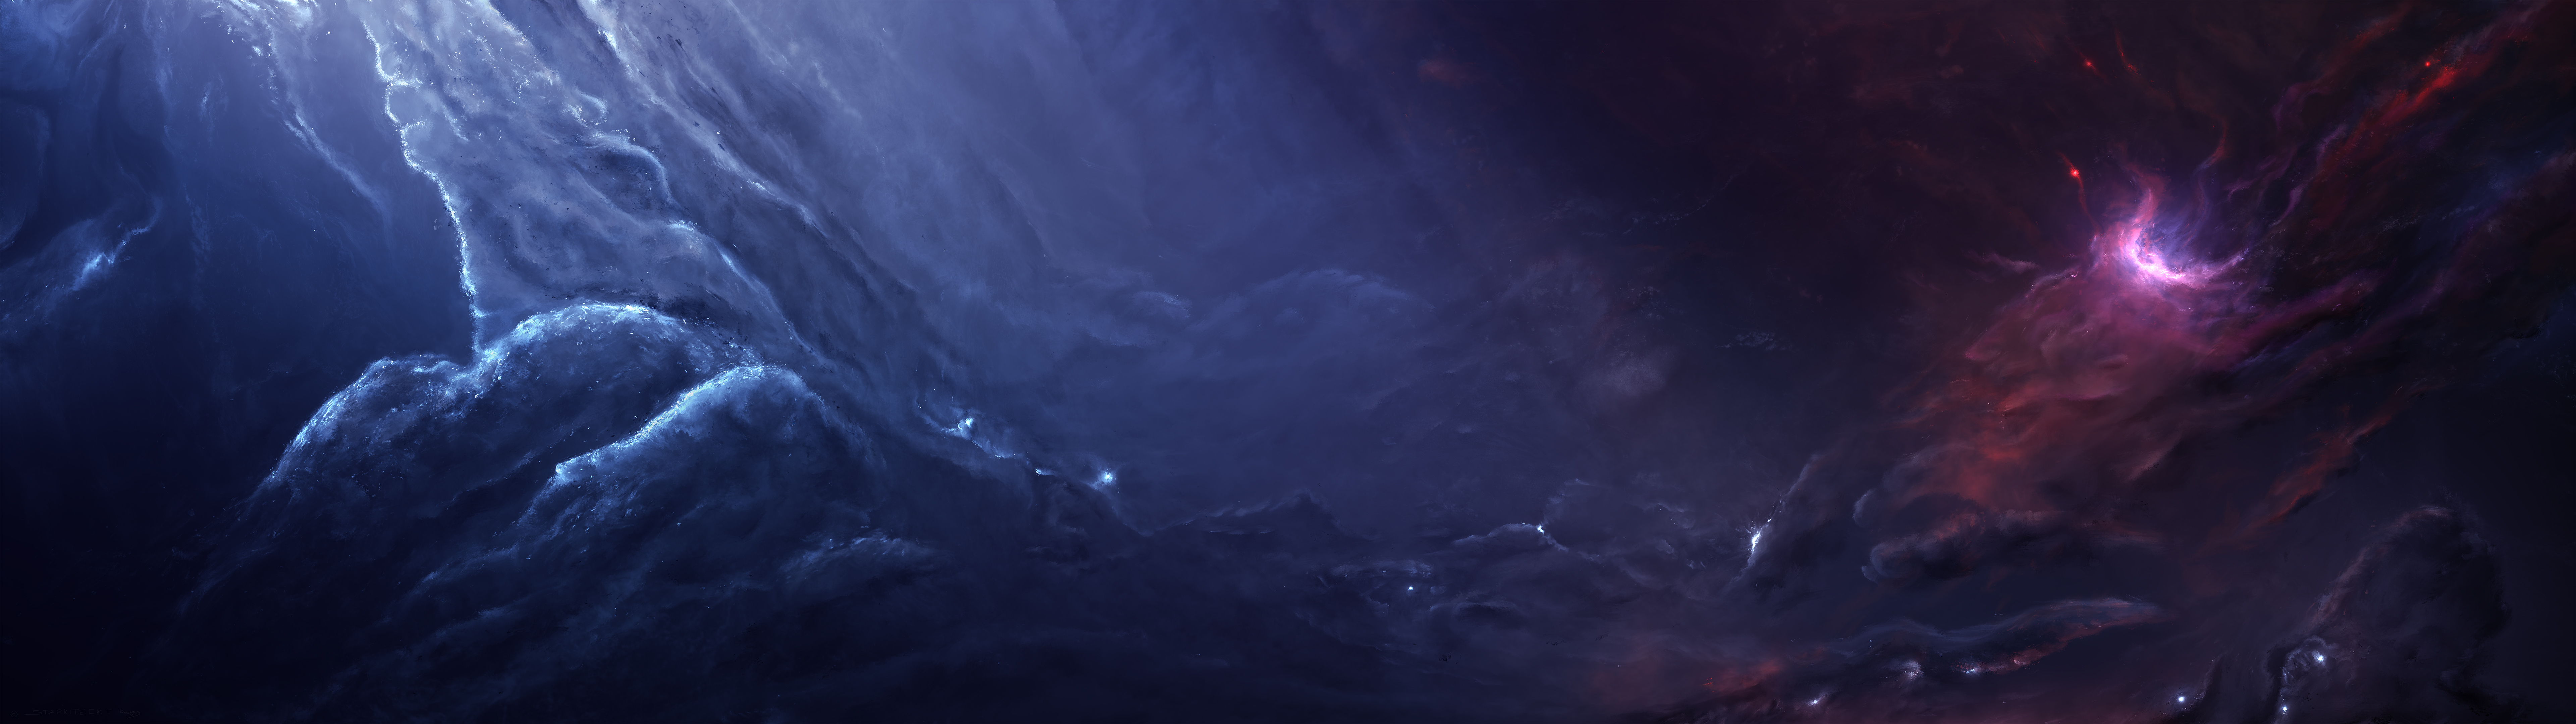 Hãy tải miễn phí màn hình đa màn hình Nebula đôi không gian xanh tím và khám phá không gian sống động hơn bao giờ hết! Với hiệu ứng ánh sáng tinh tế và tầm nhìn ngoạn mục, việc tận hưởng trải nghiệm giải trí chưa bao giờ dễ dàng đến thế. Hãy nhấn nút tải về ngay để xem thêm!